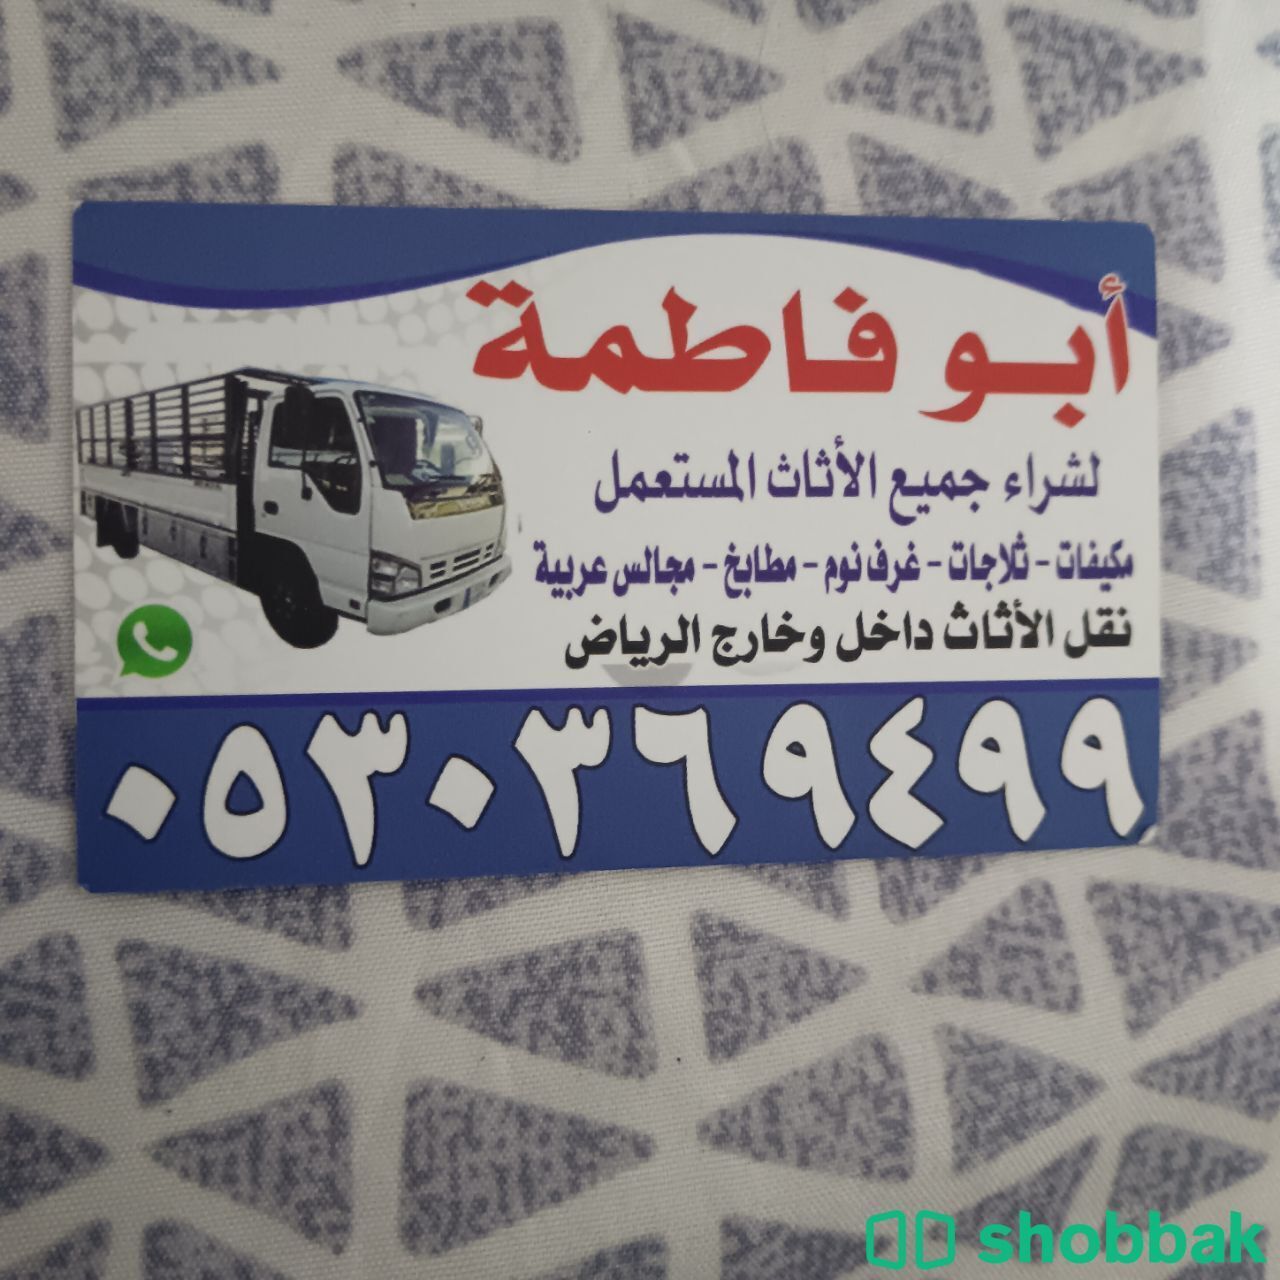 شراء مكيفات مستعملة حي النرجس 0530369499 Shobbak Saudi Arabia